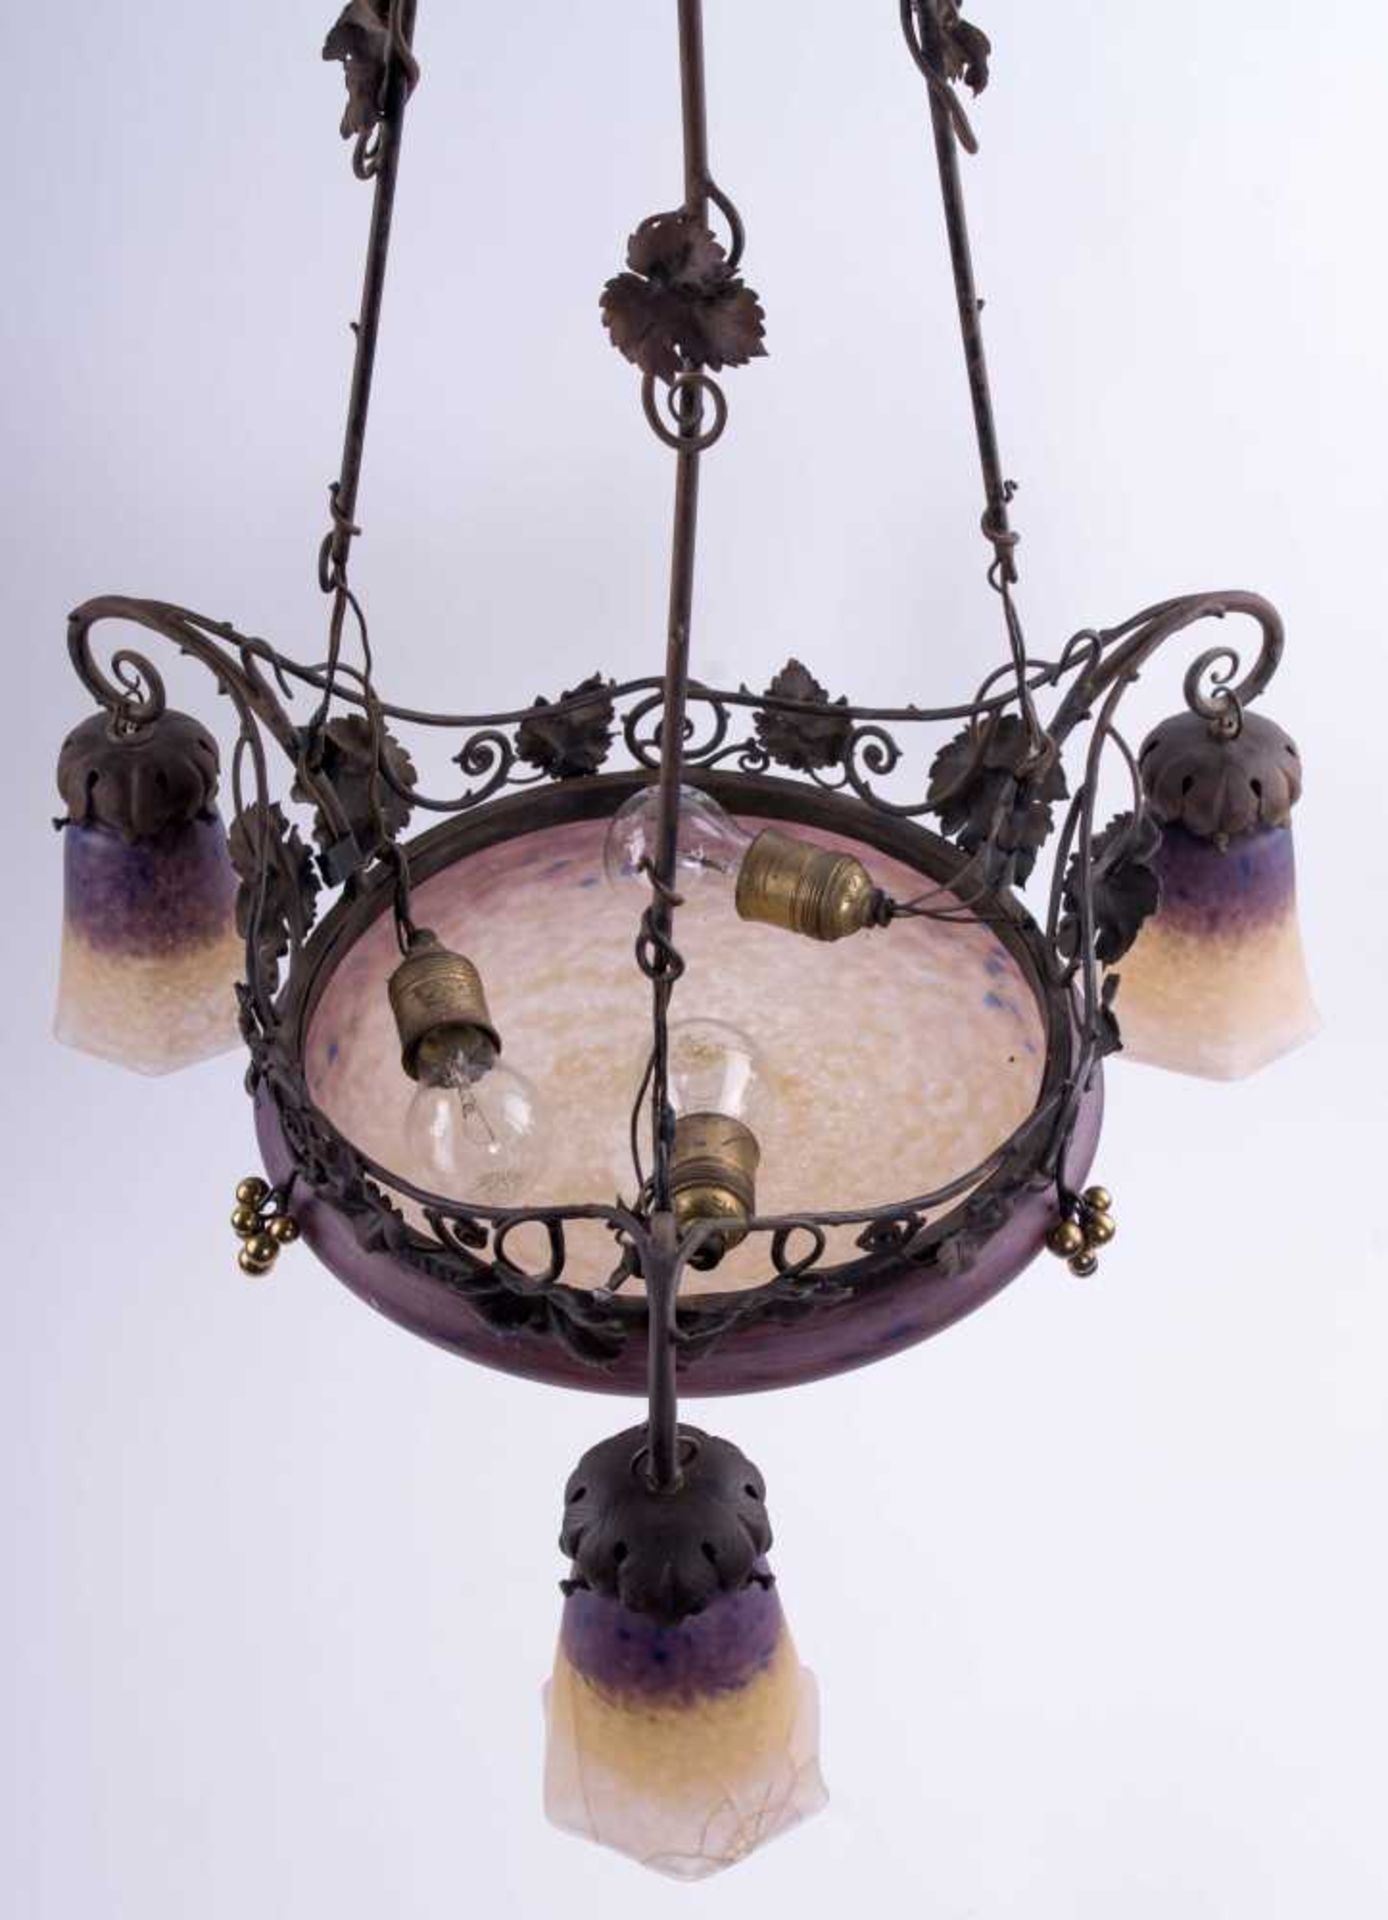 Jugendstillampe / Art Nouveau lamp Violet-weiß farbiges Glas, schmiedeeisernes florales Dekor, - Bild 3 aus 5